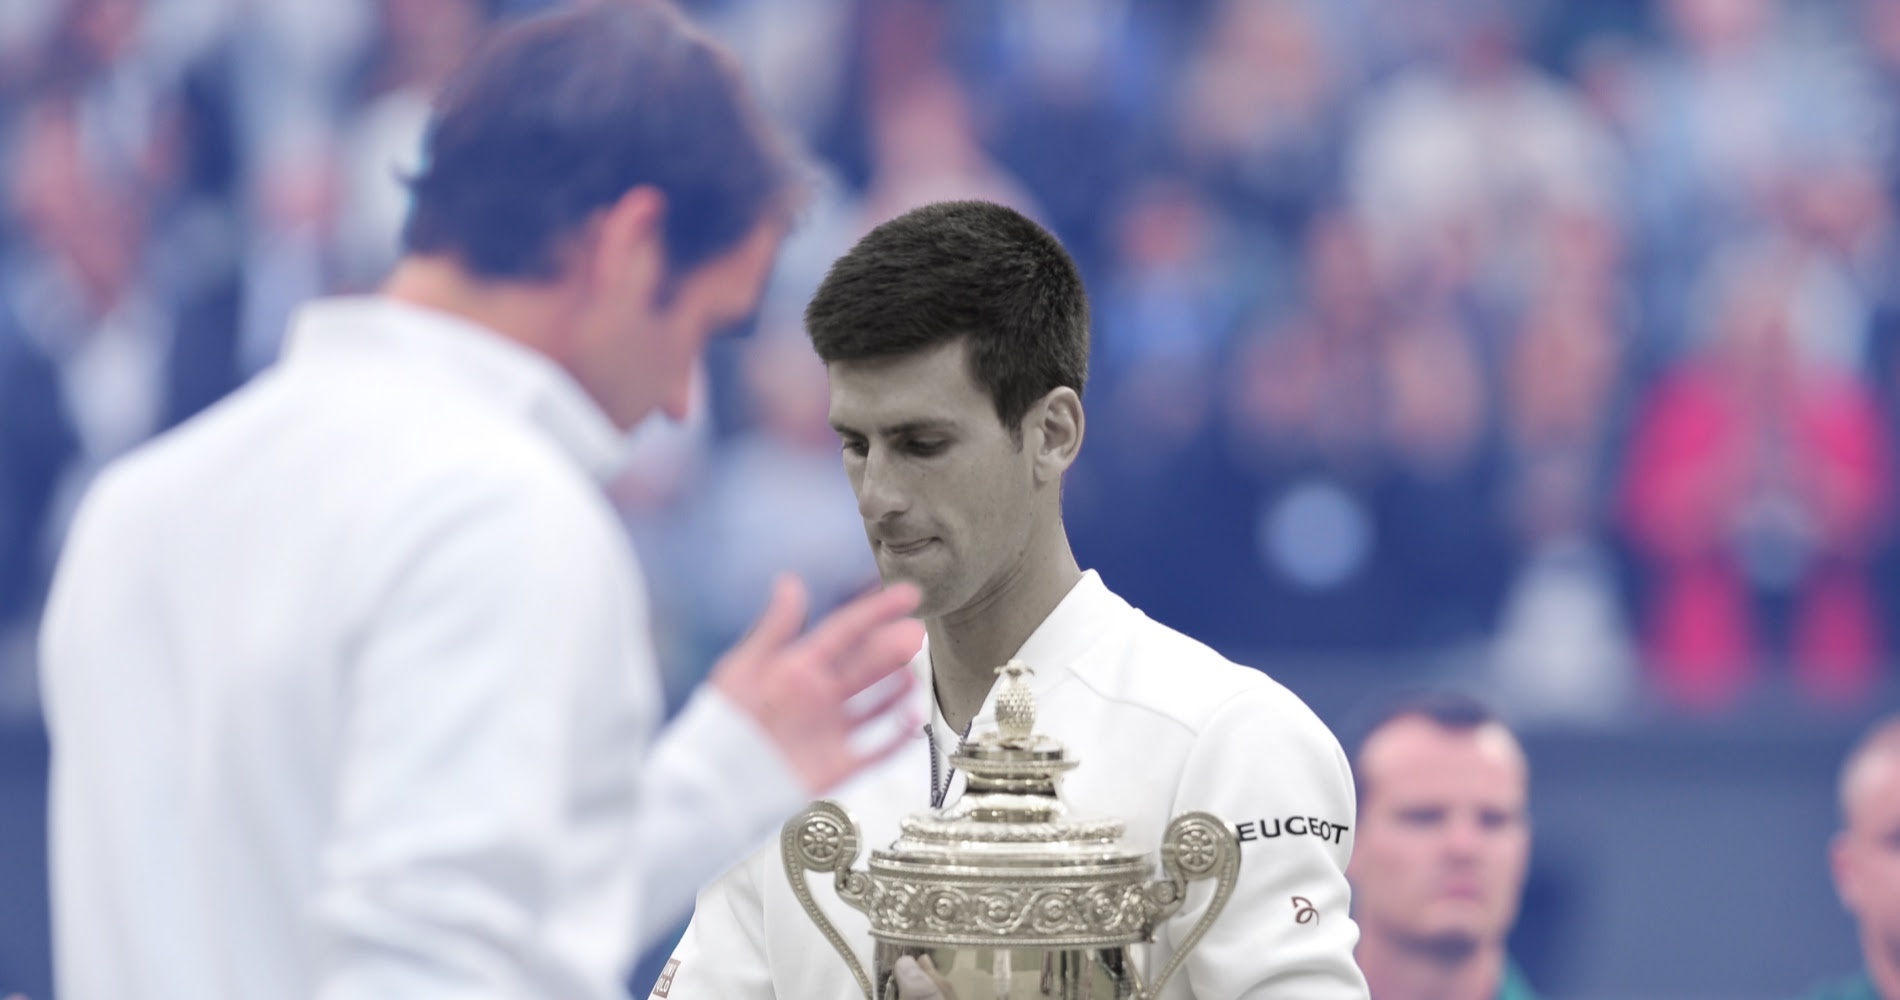 On this day: Novak Djokovic vs Roger Federer, Wimbledon 2015